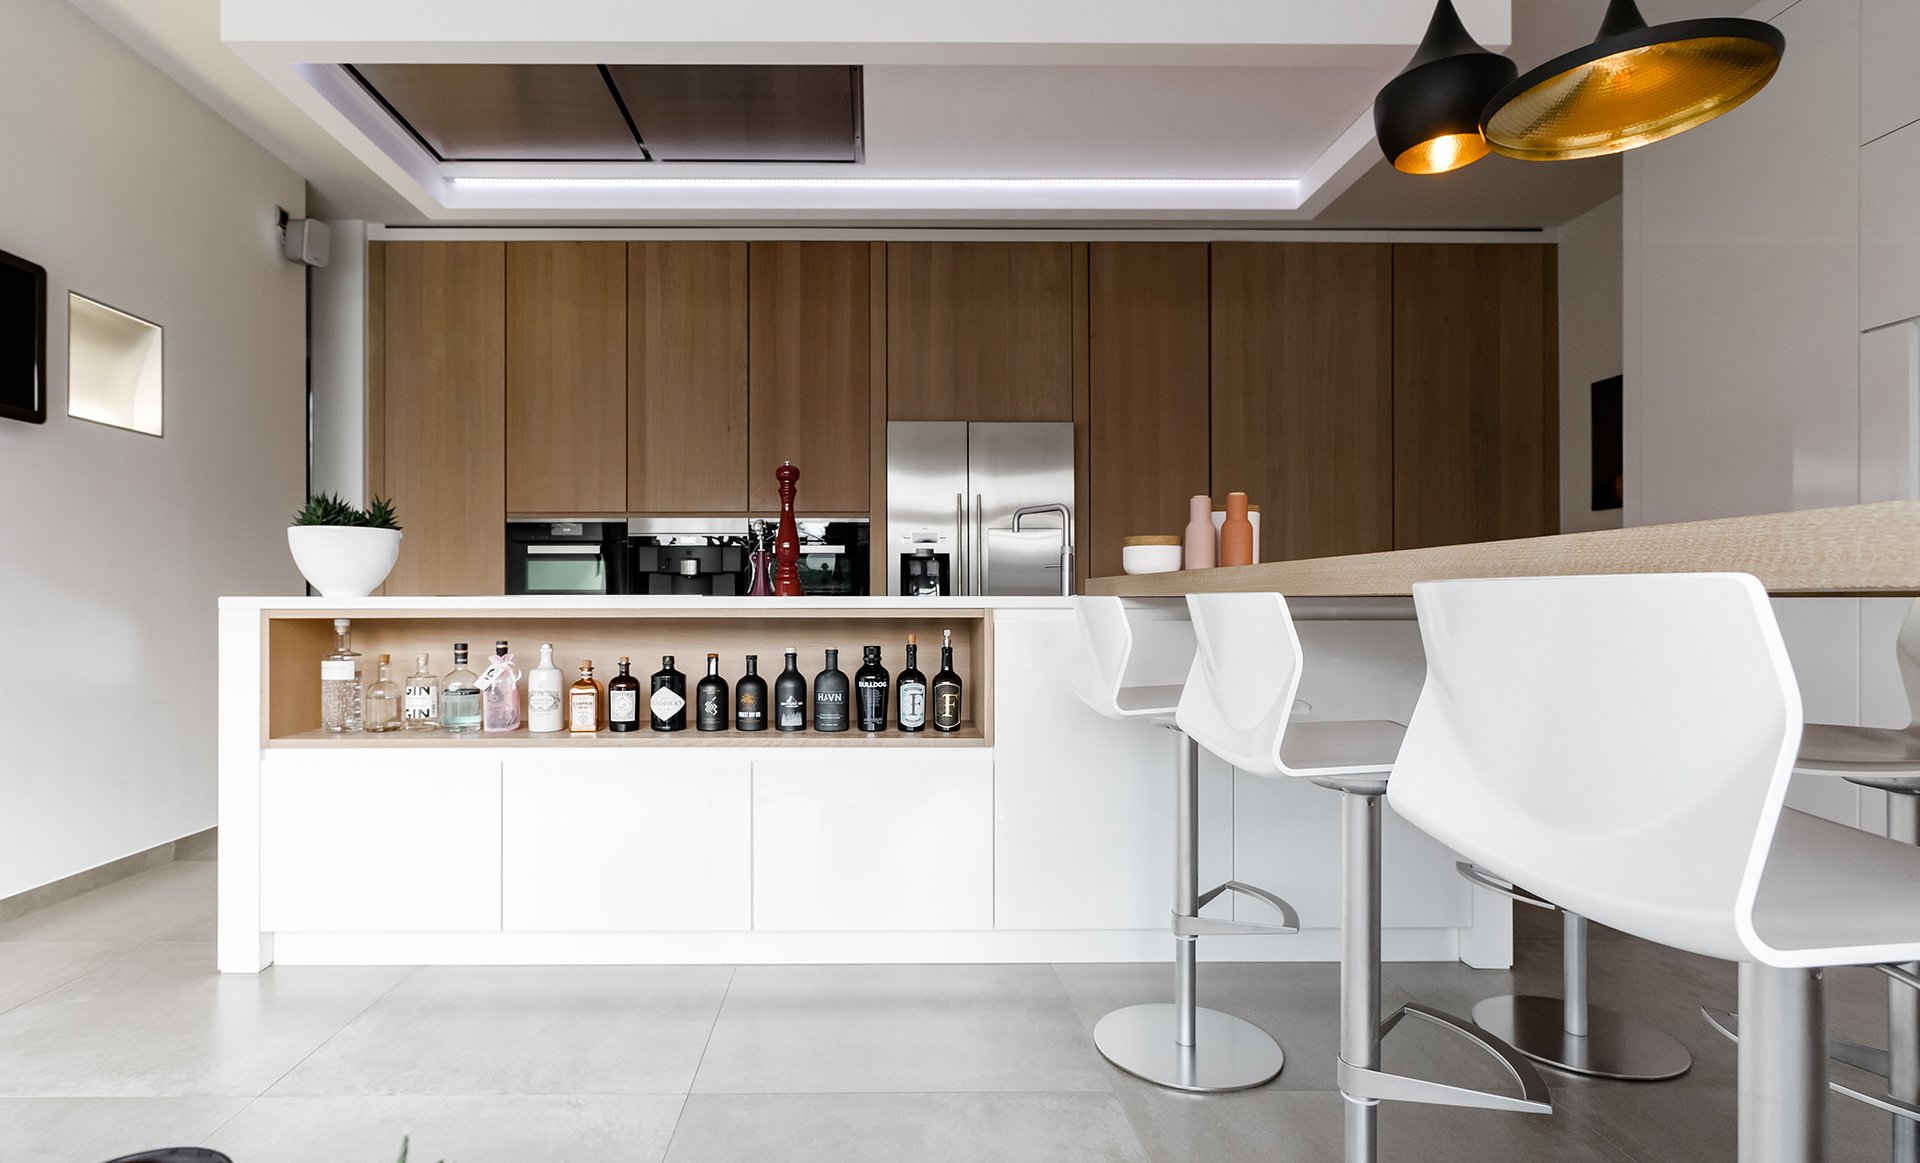 Keukens & interieur op maat, dat is de specialiteit van G-Design in Lommel.